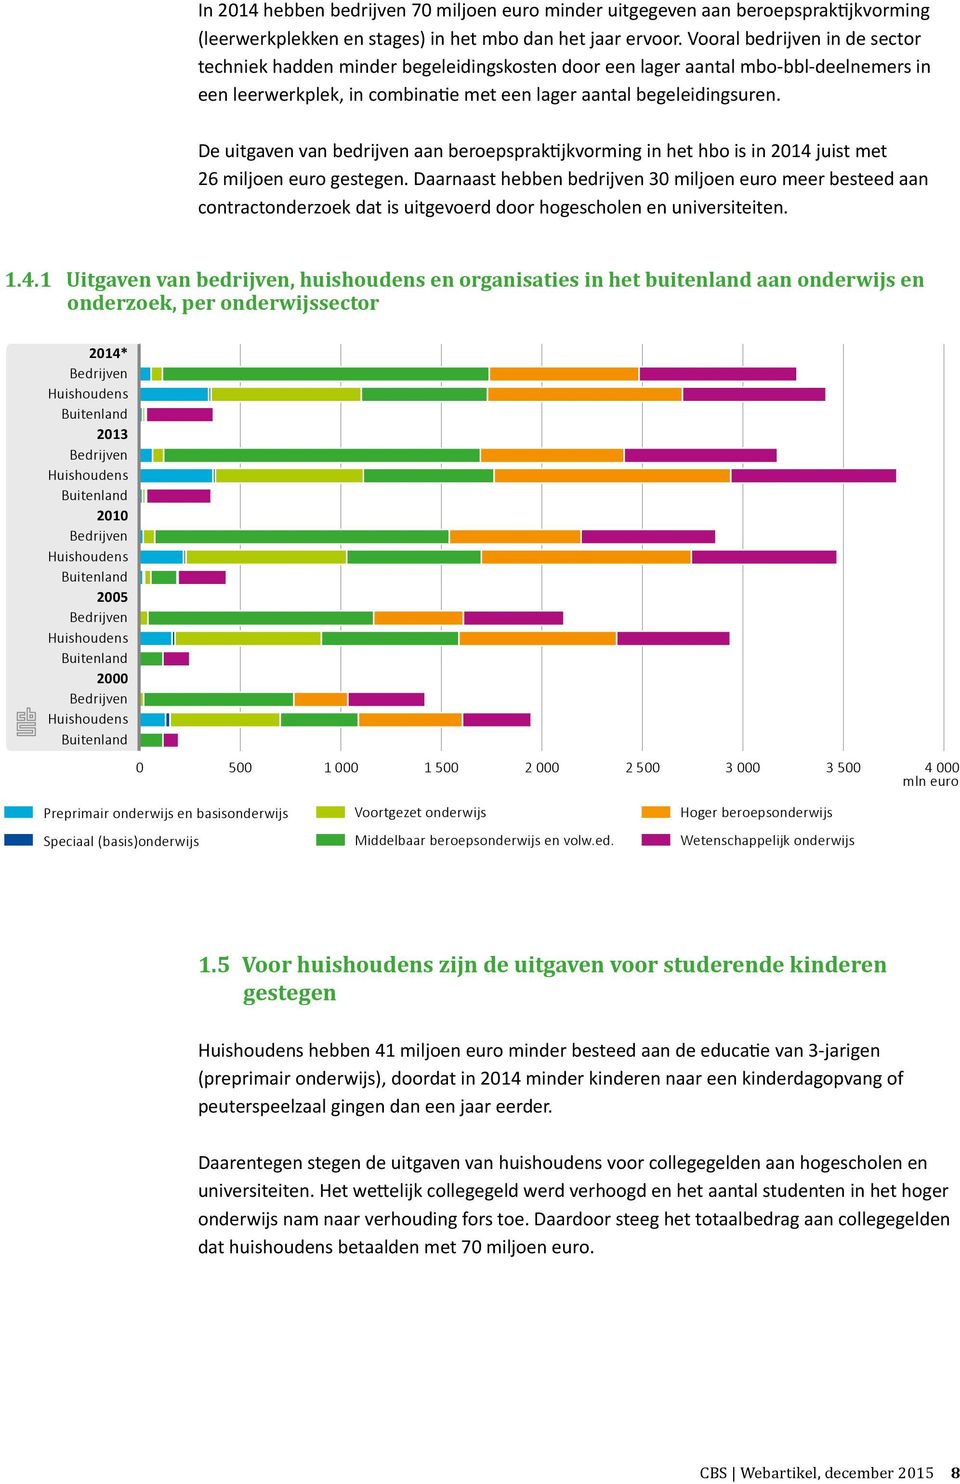 De uitgaven van bedrijven aan beroepspraktijkvorming in het hbo is in 2014 juist met 26 miljoen euro gestegen.